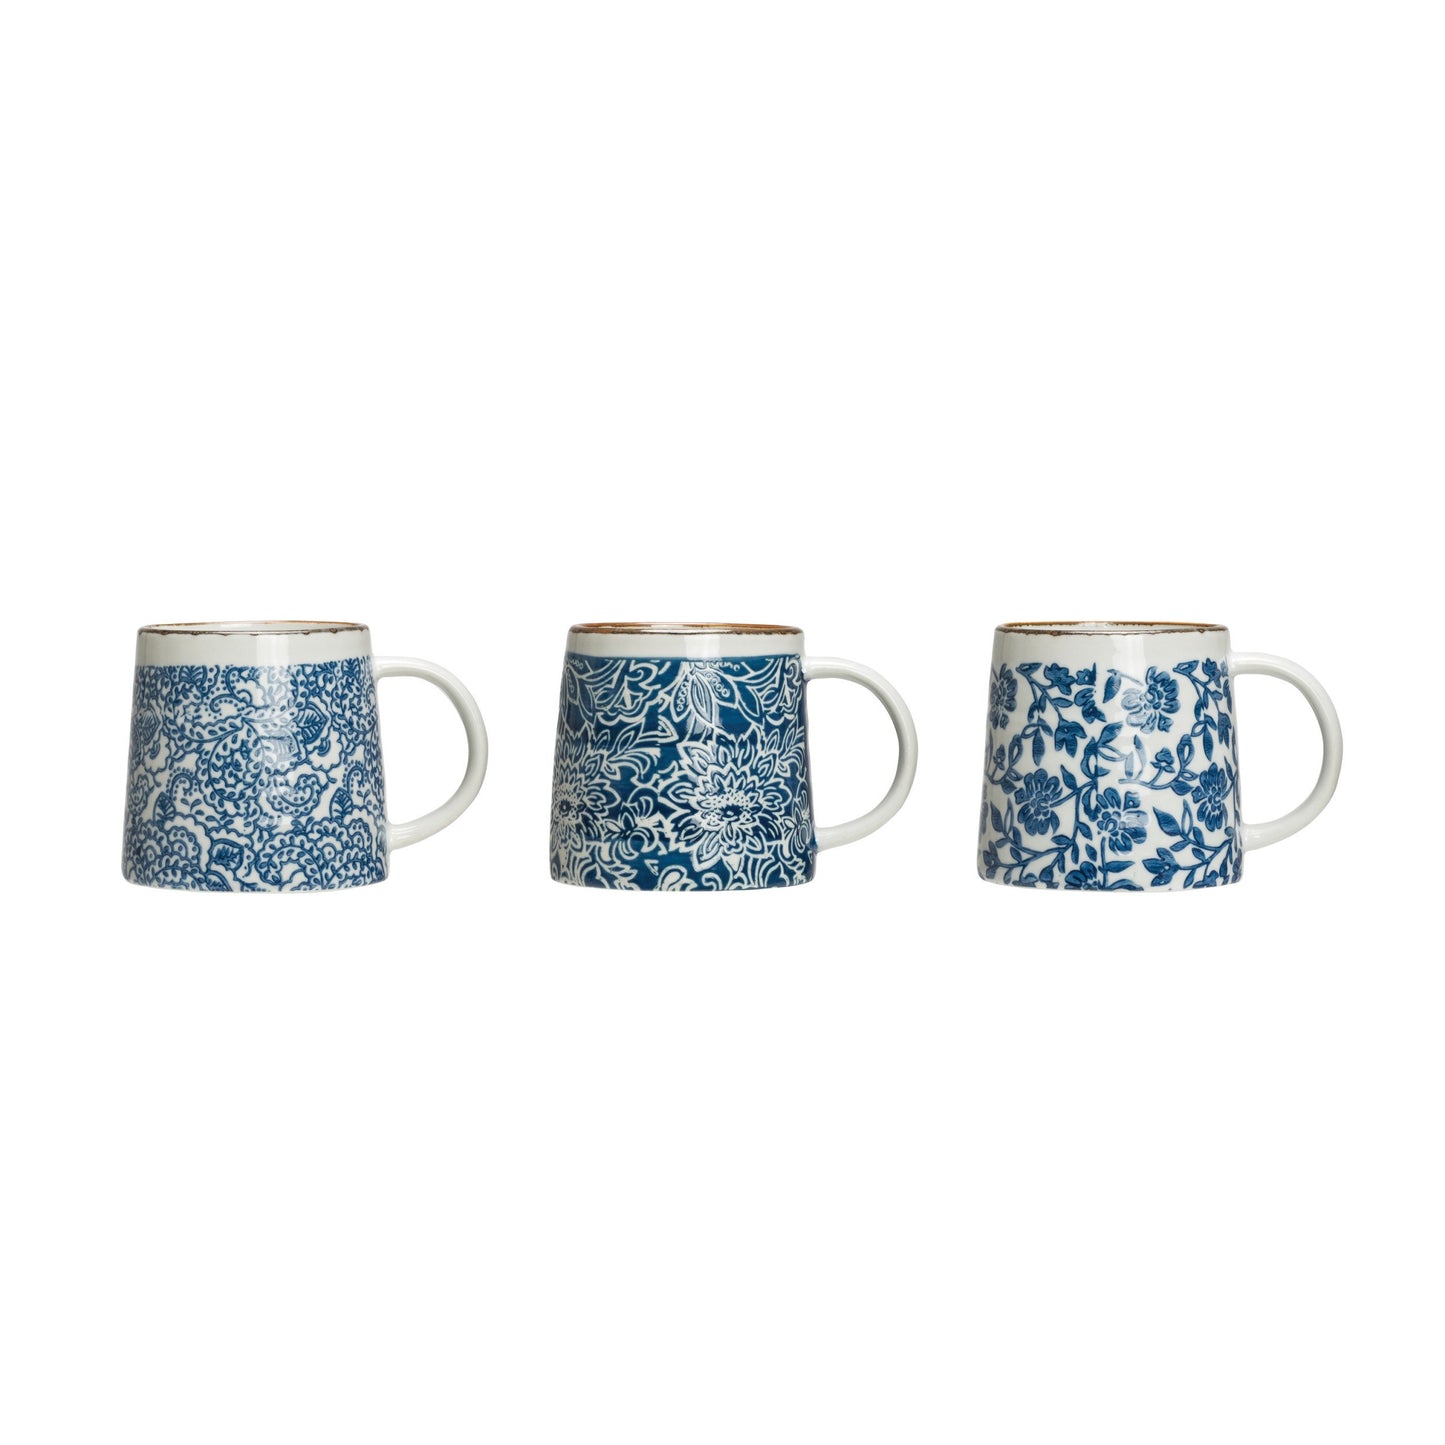 12 oz Blue and White Stoneware Mug